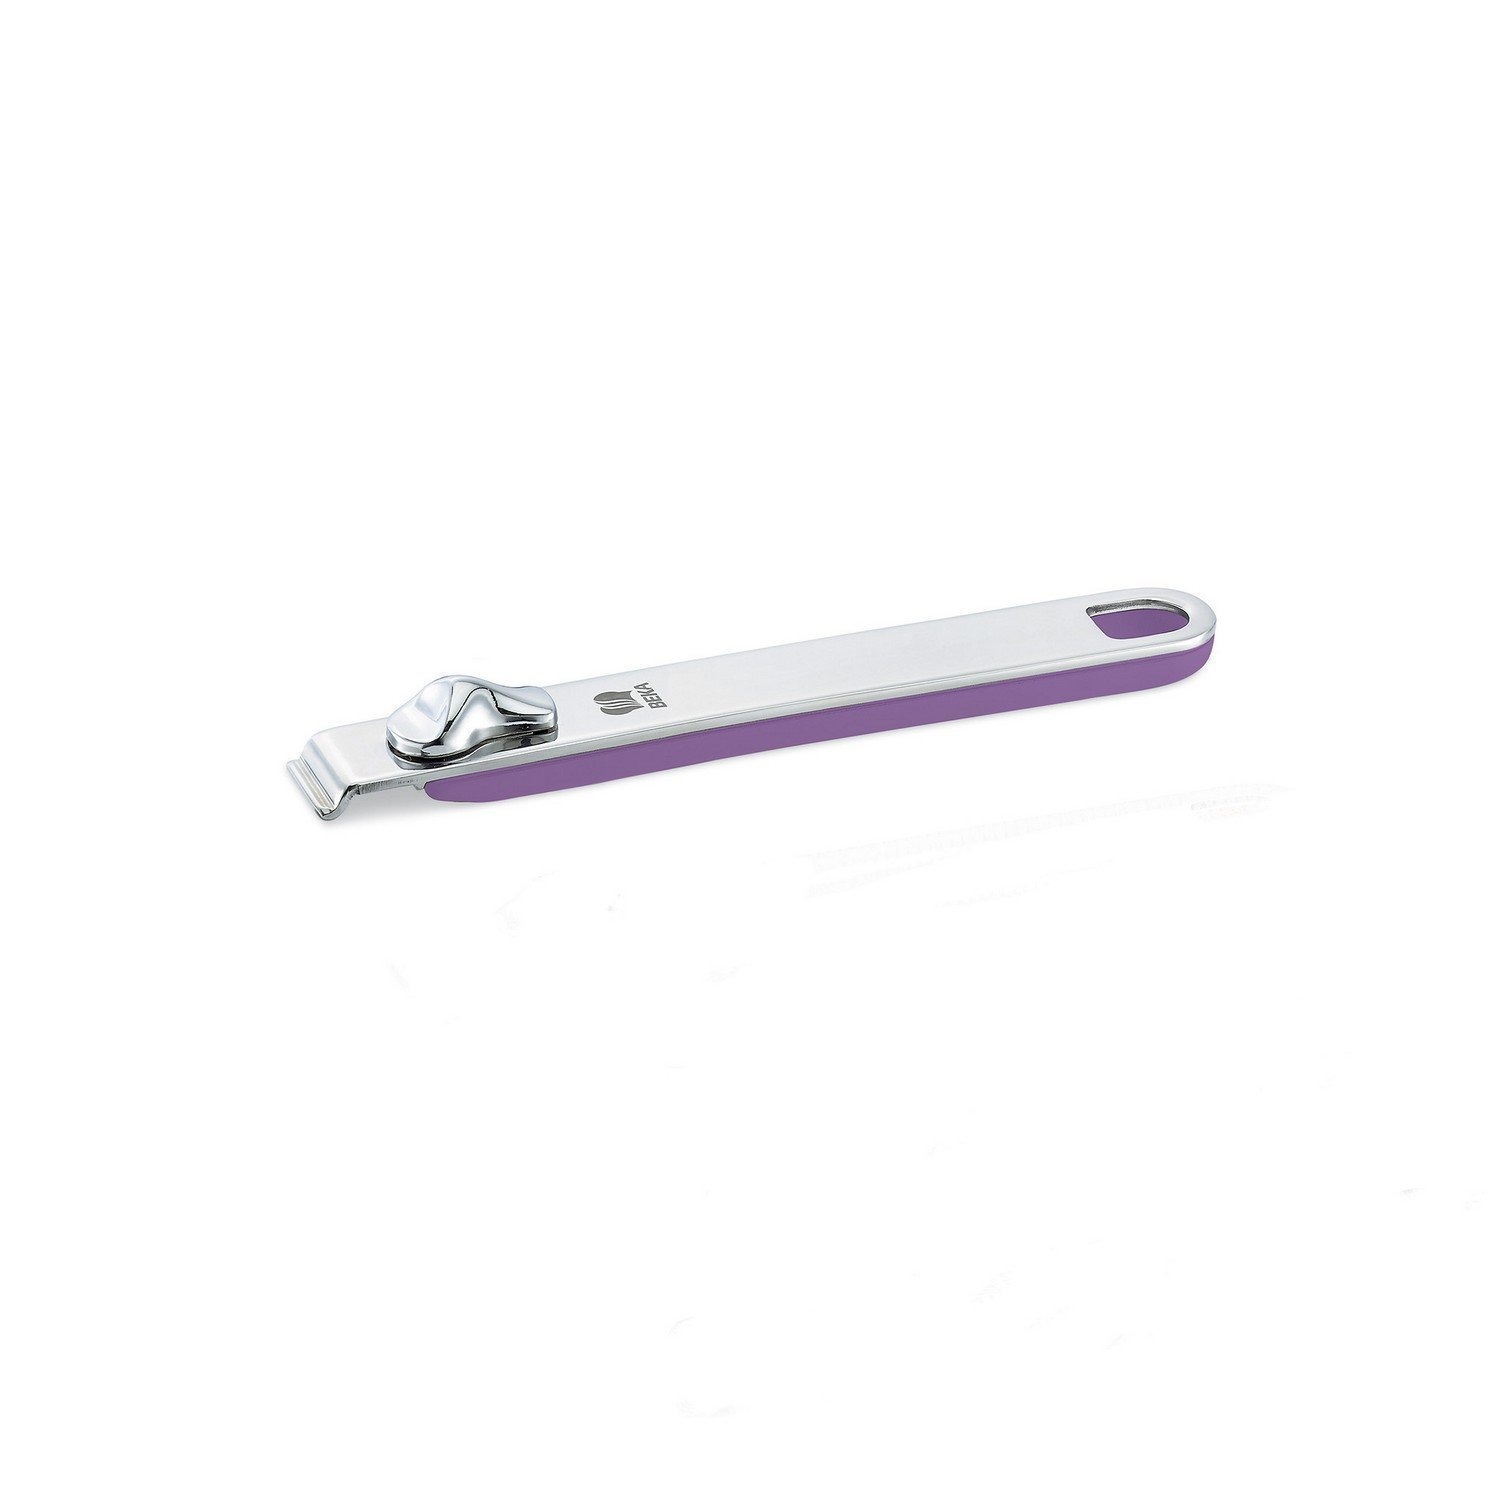 Ручка съемная длинная Beka select фиолетовая 18,5 см сковорода woll dpi 32 см съемная ручка